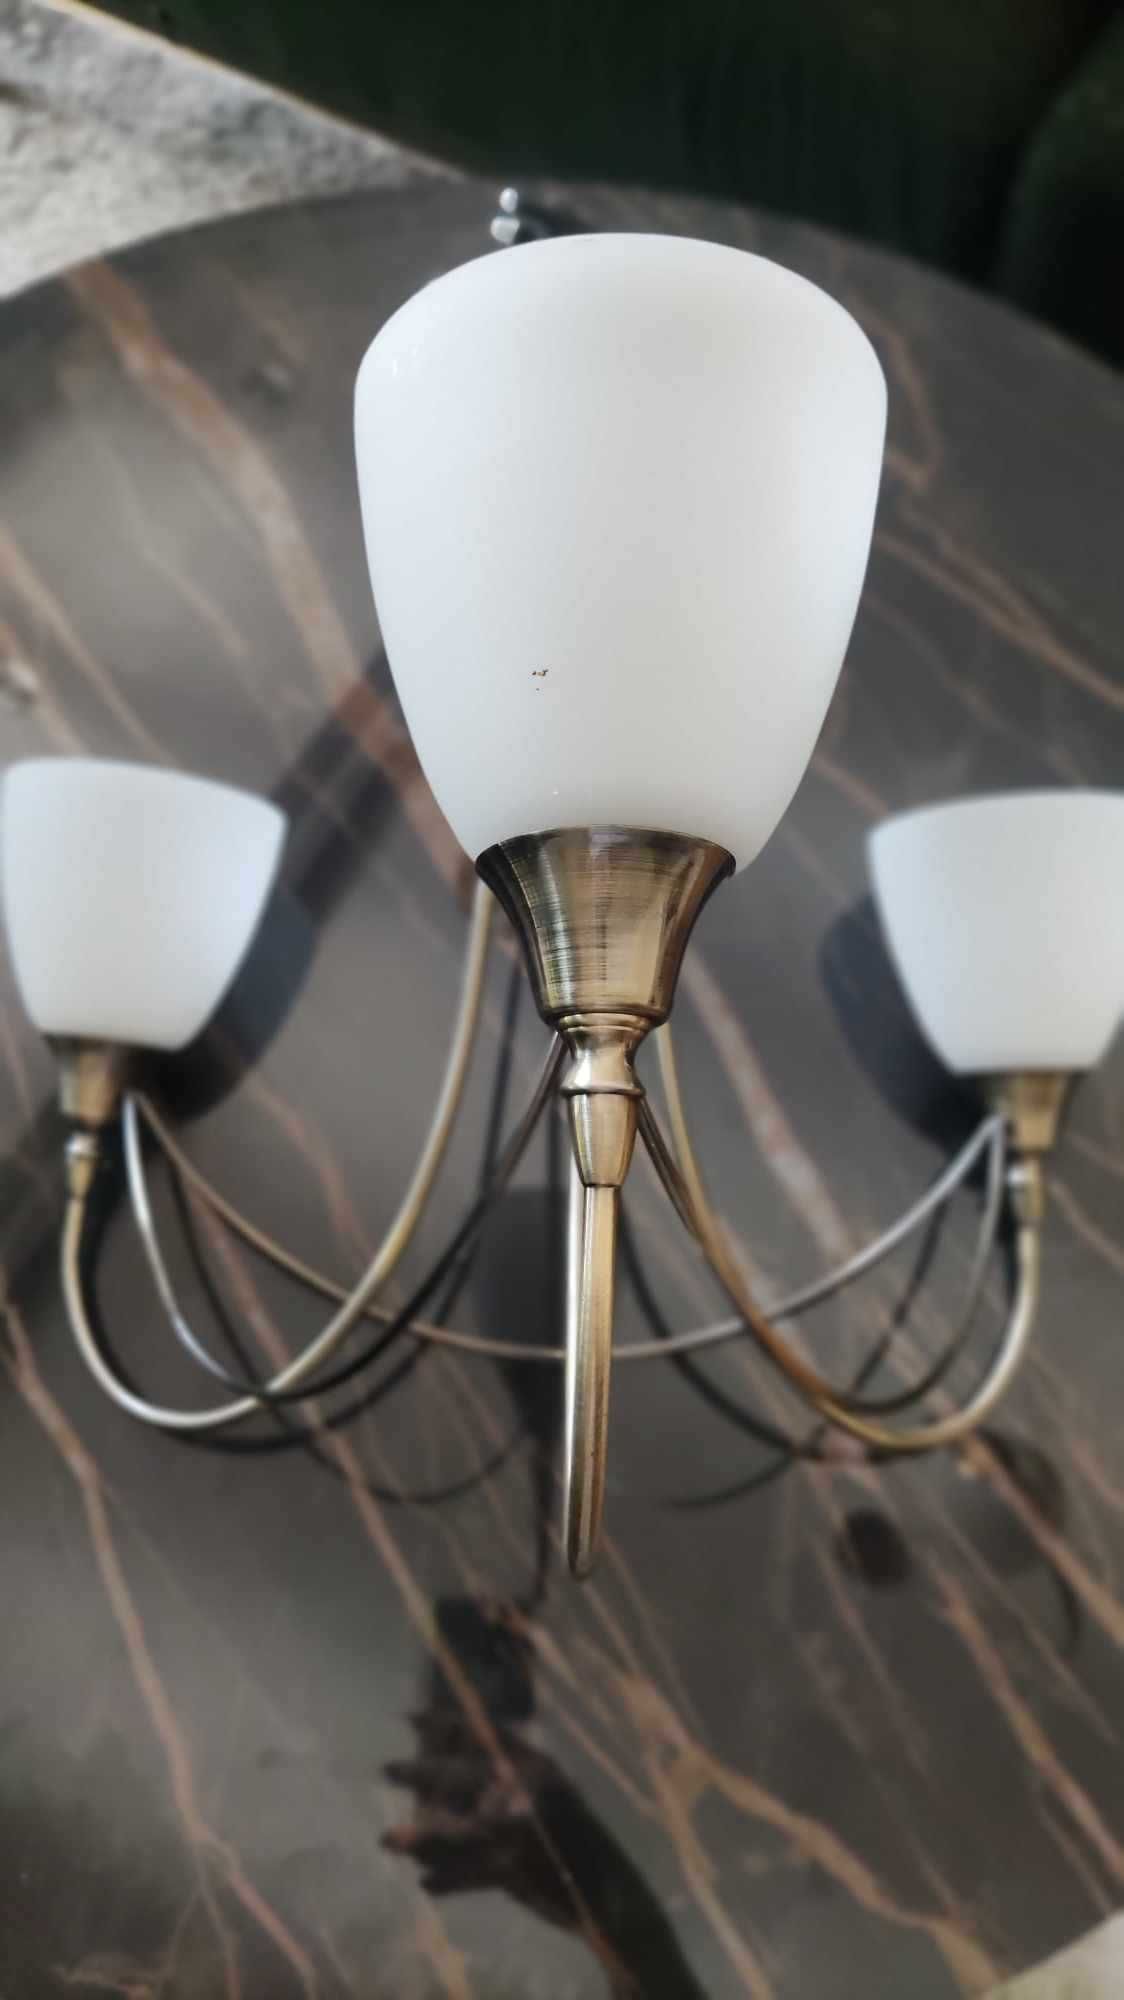 Komplet stylizowanych lamp do wnętrza domu w idealnym stanie.